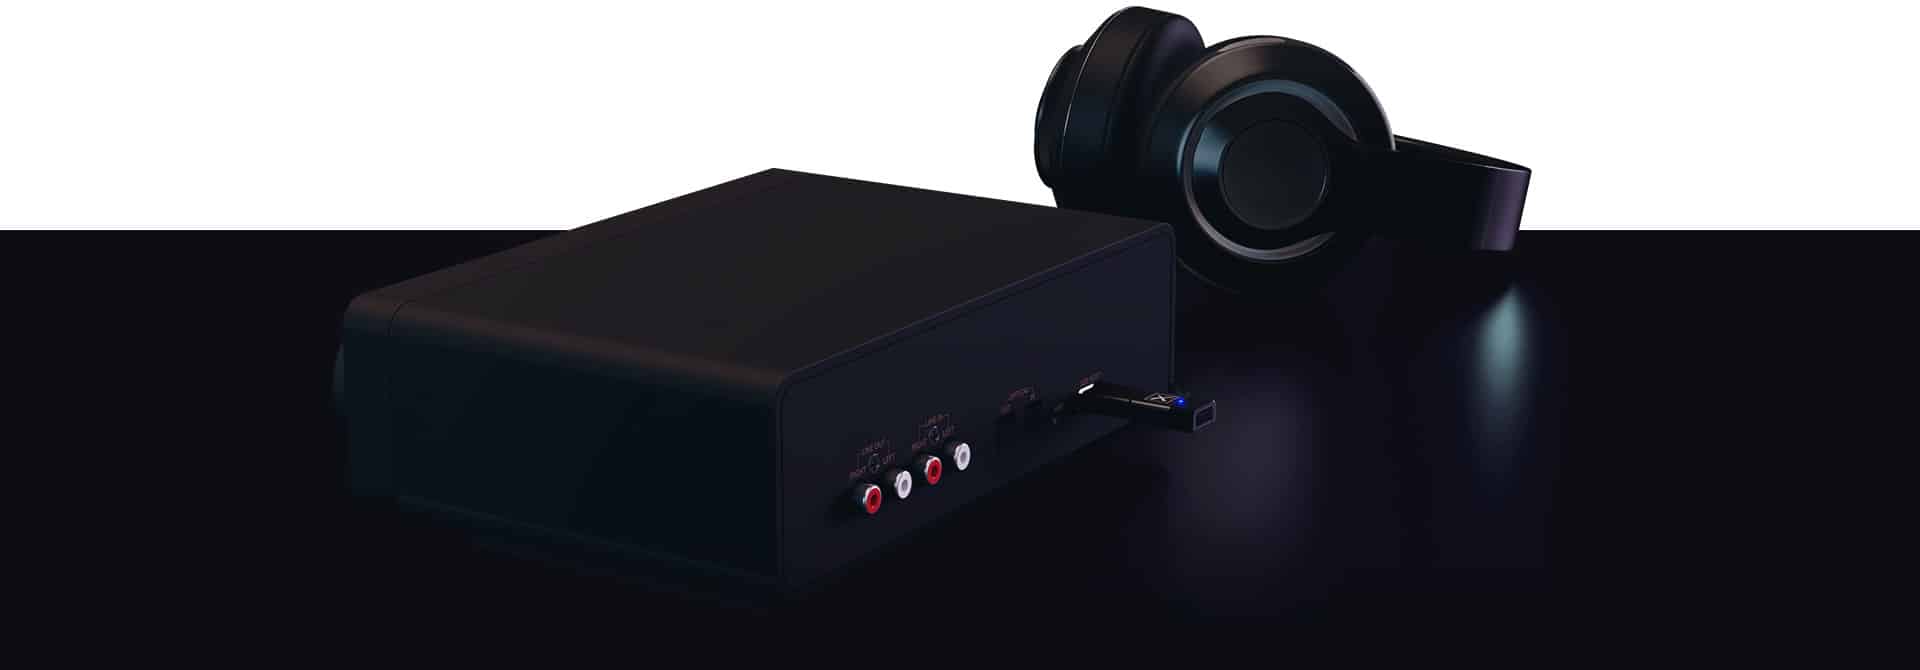 Sound Blaster X5: recensione della scheda audio esterna DAC/amplificatore più potente di Creative